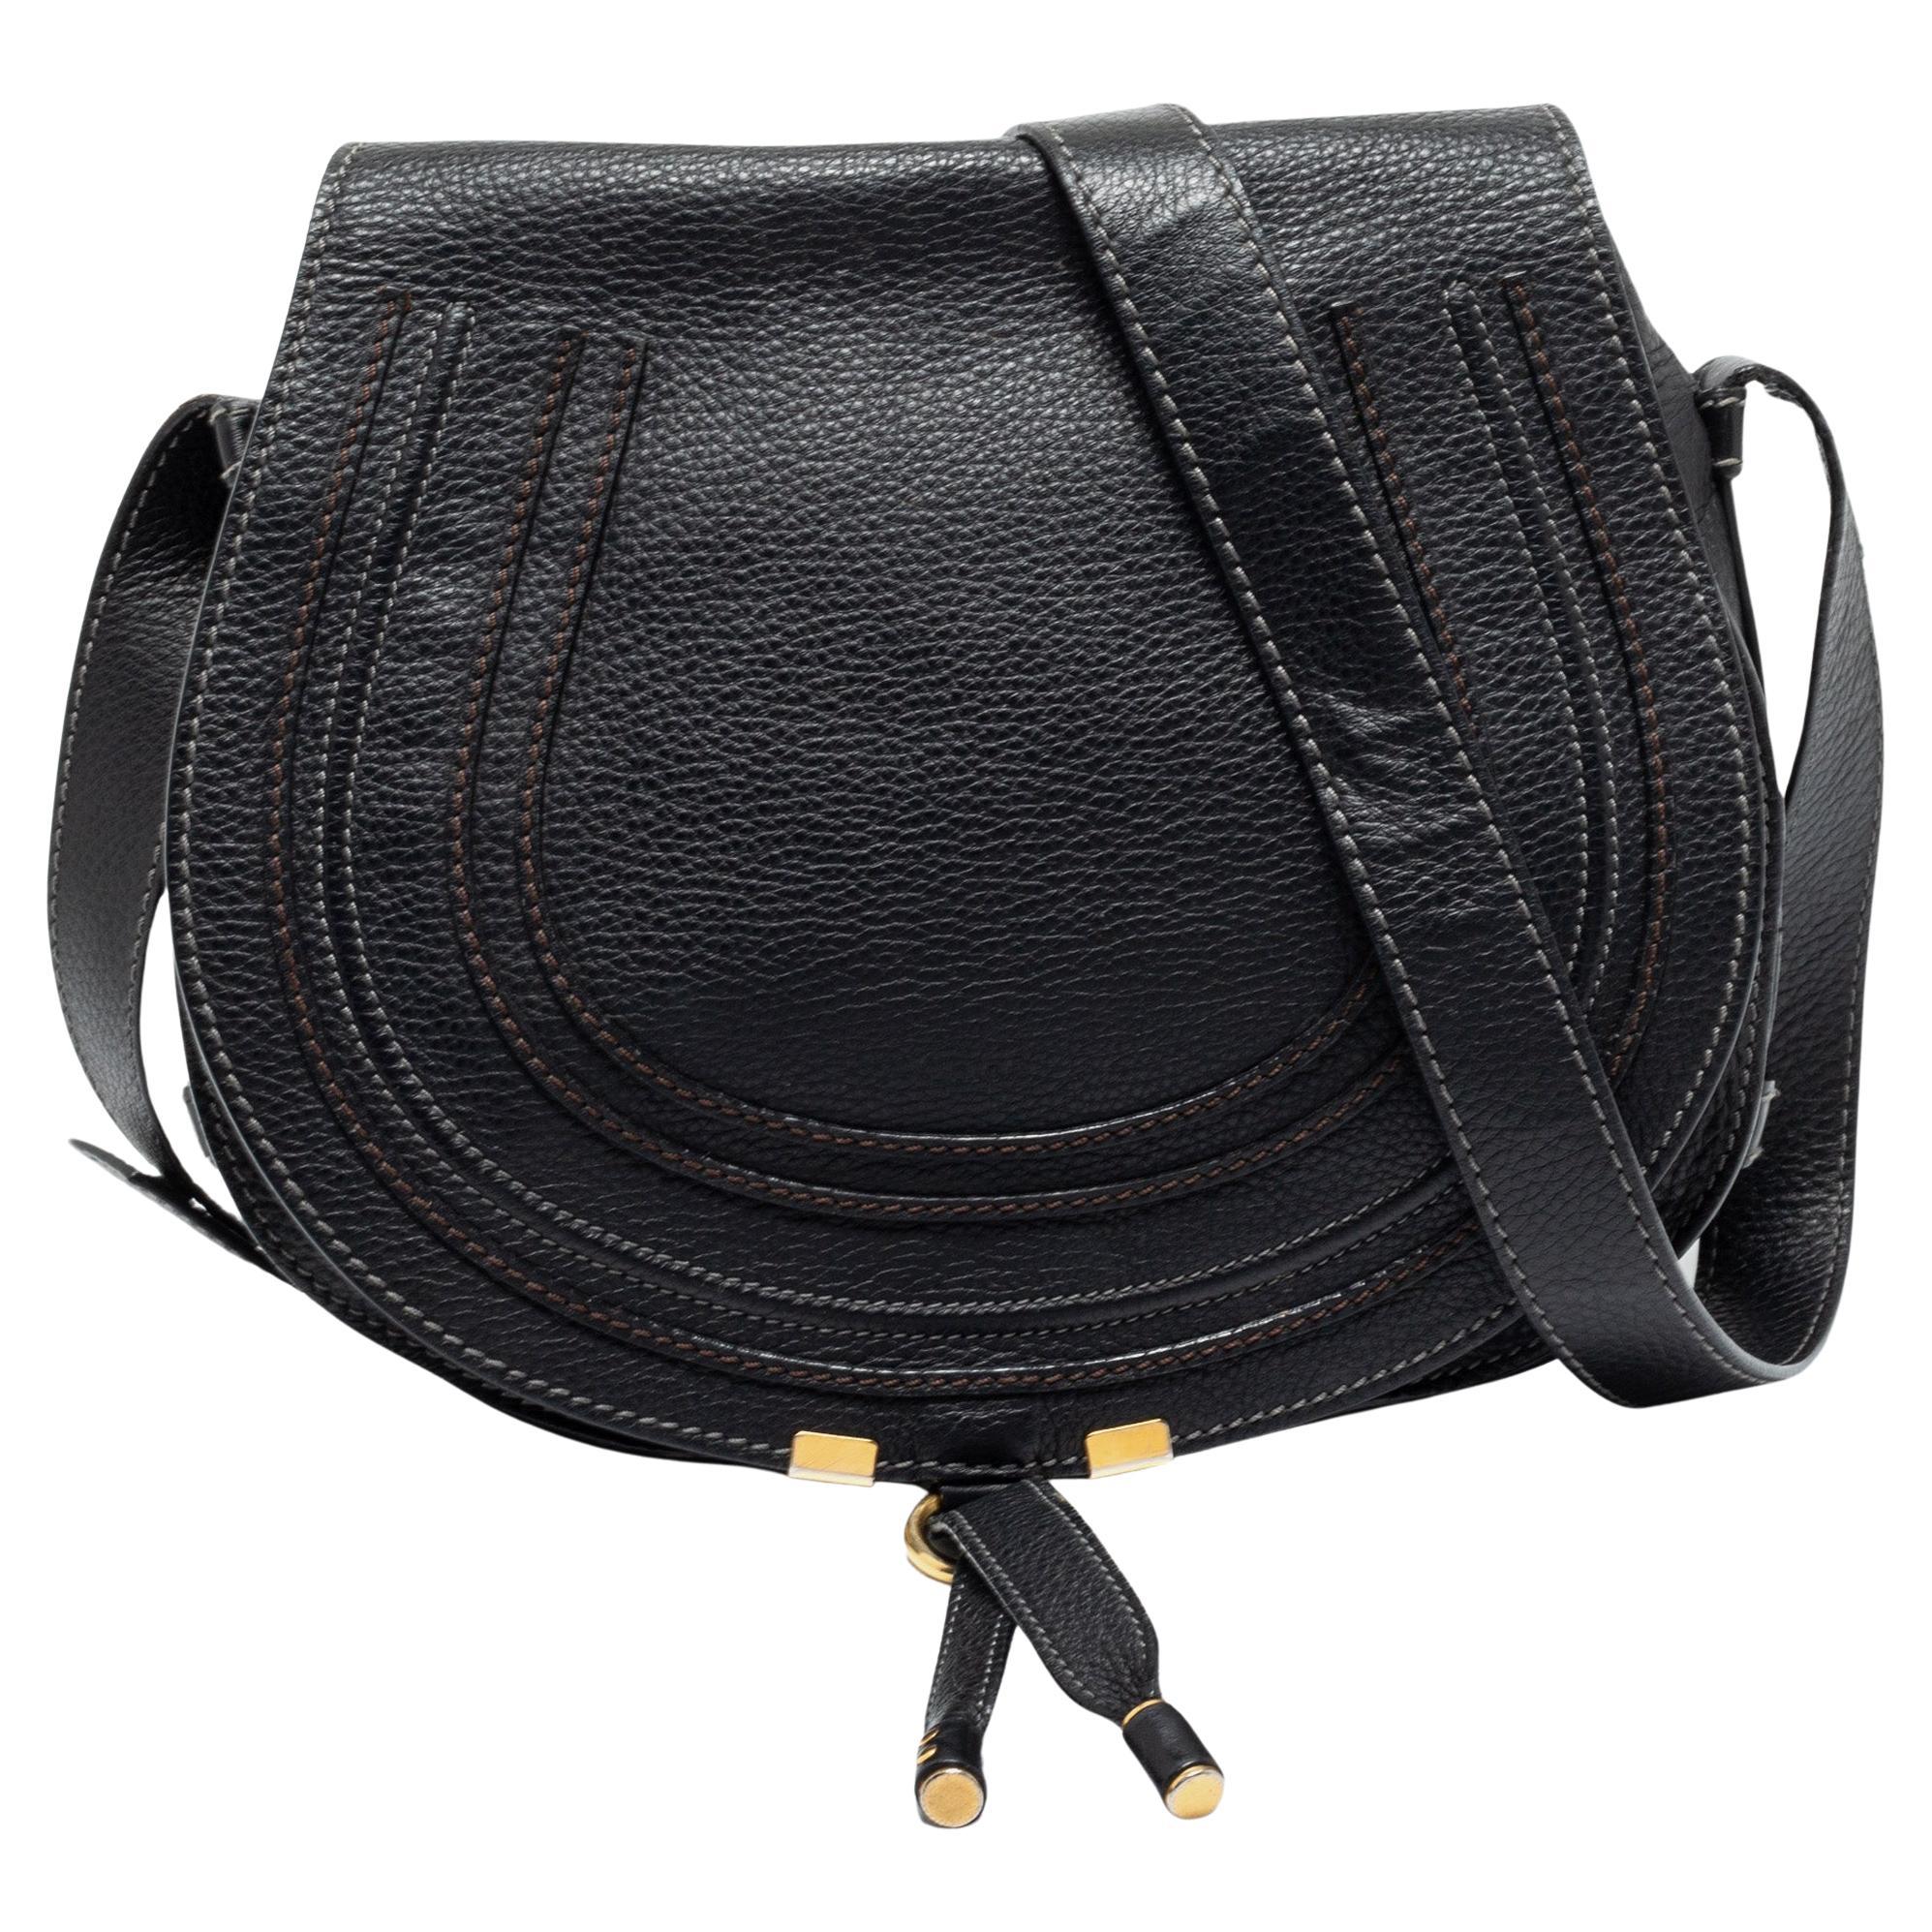 Chloe Black Leather Medium Marcie Crossbody Bag